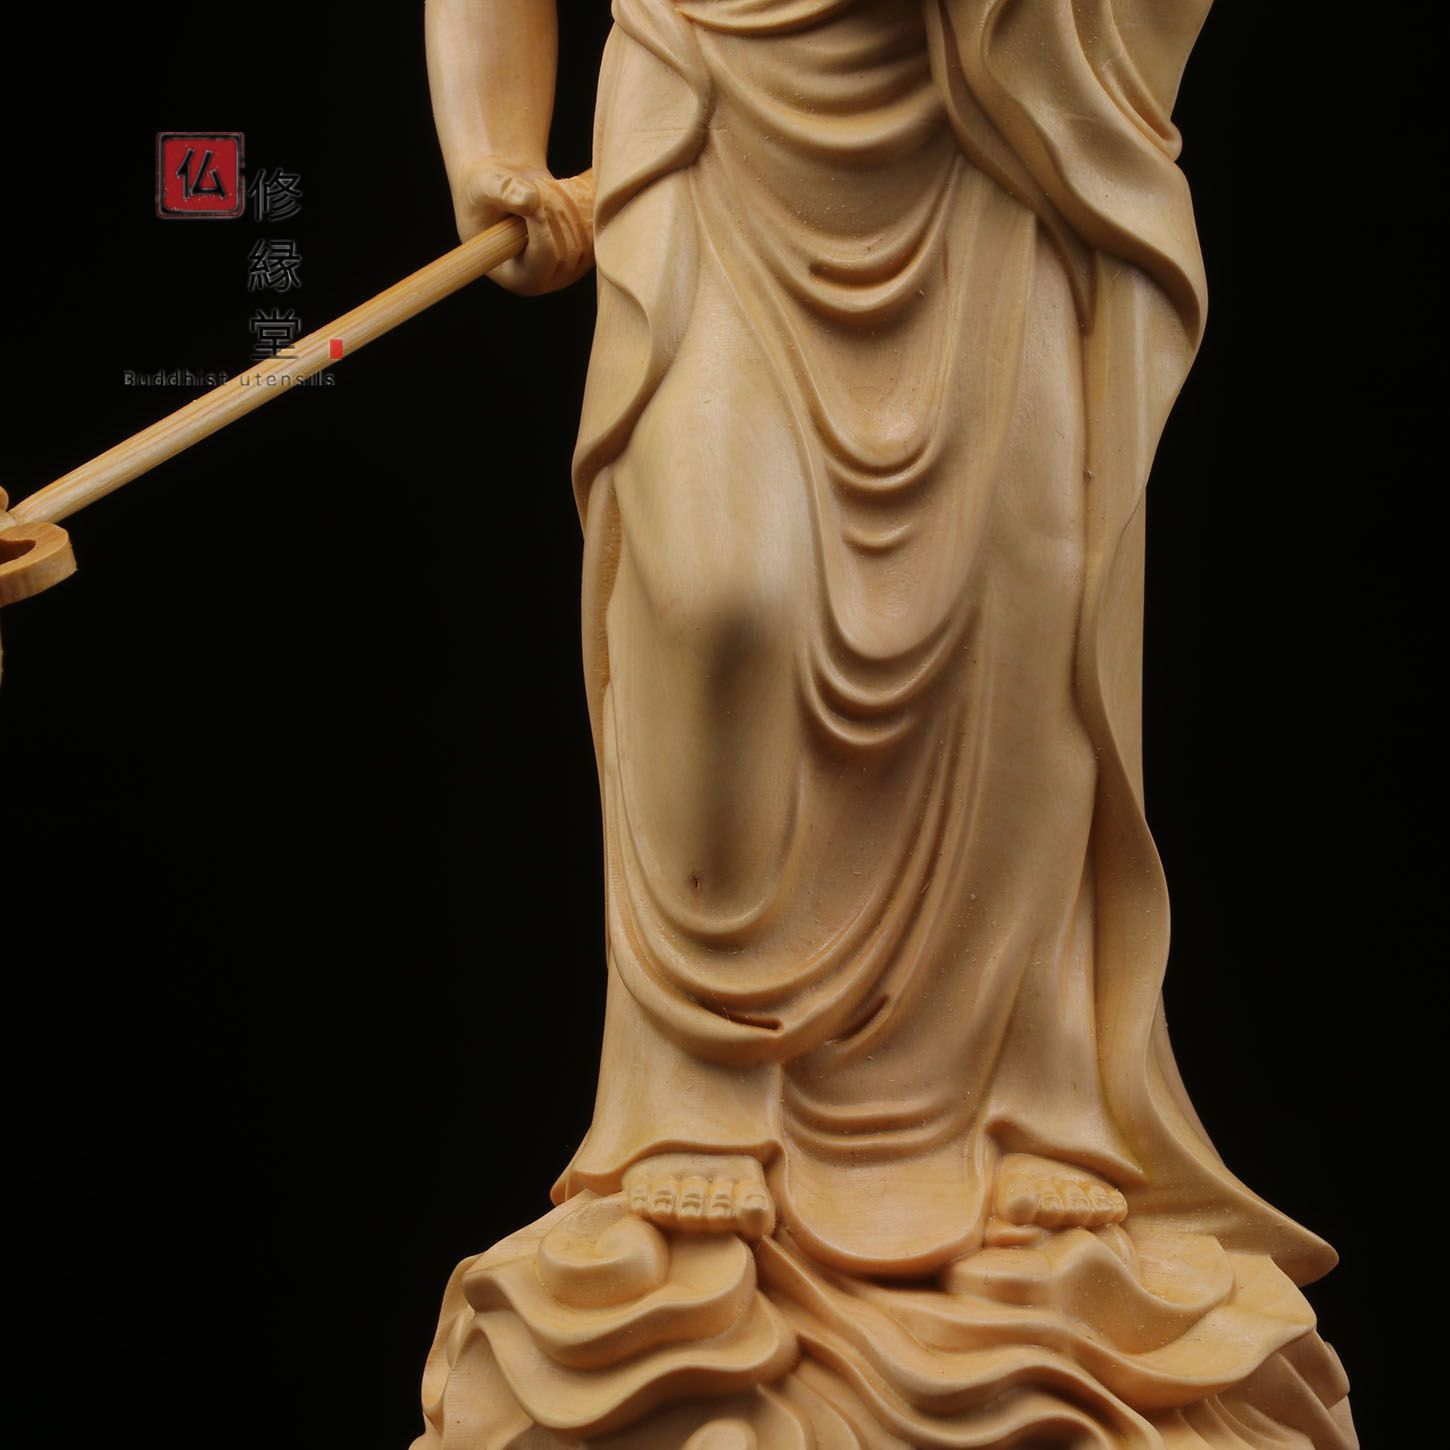 【修縁堂】極上彫 木彫仏像 地蔵菩薩立像 彫刻 仏教工芸品 柘植材 仏師で仕上げ仏像